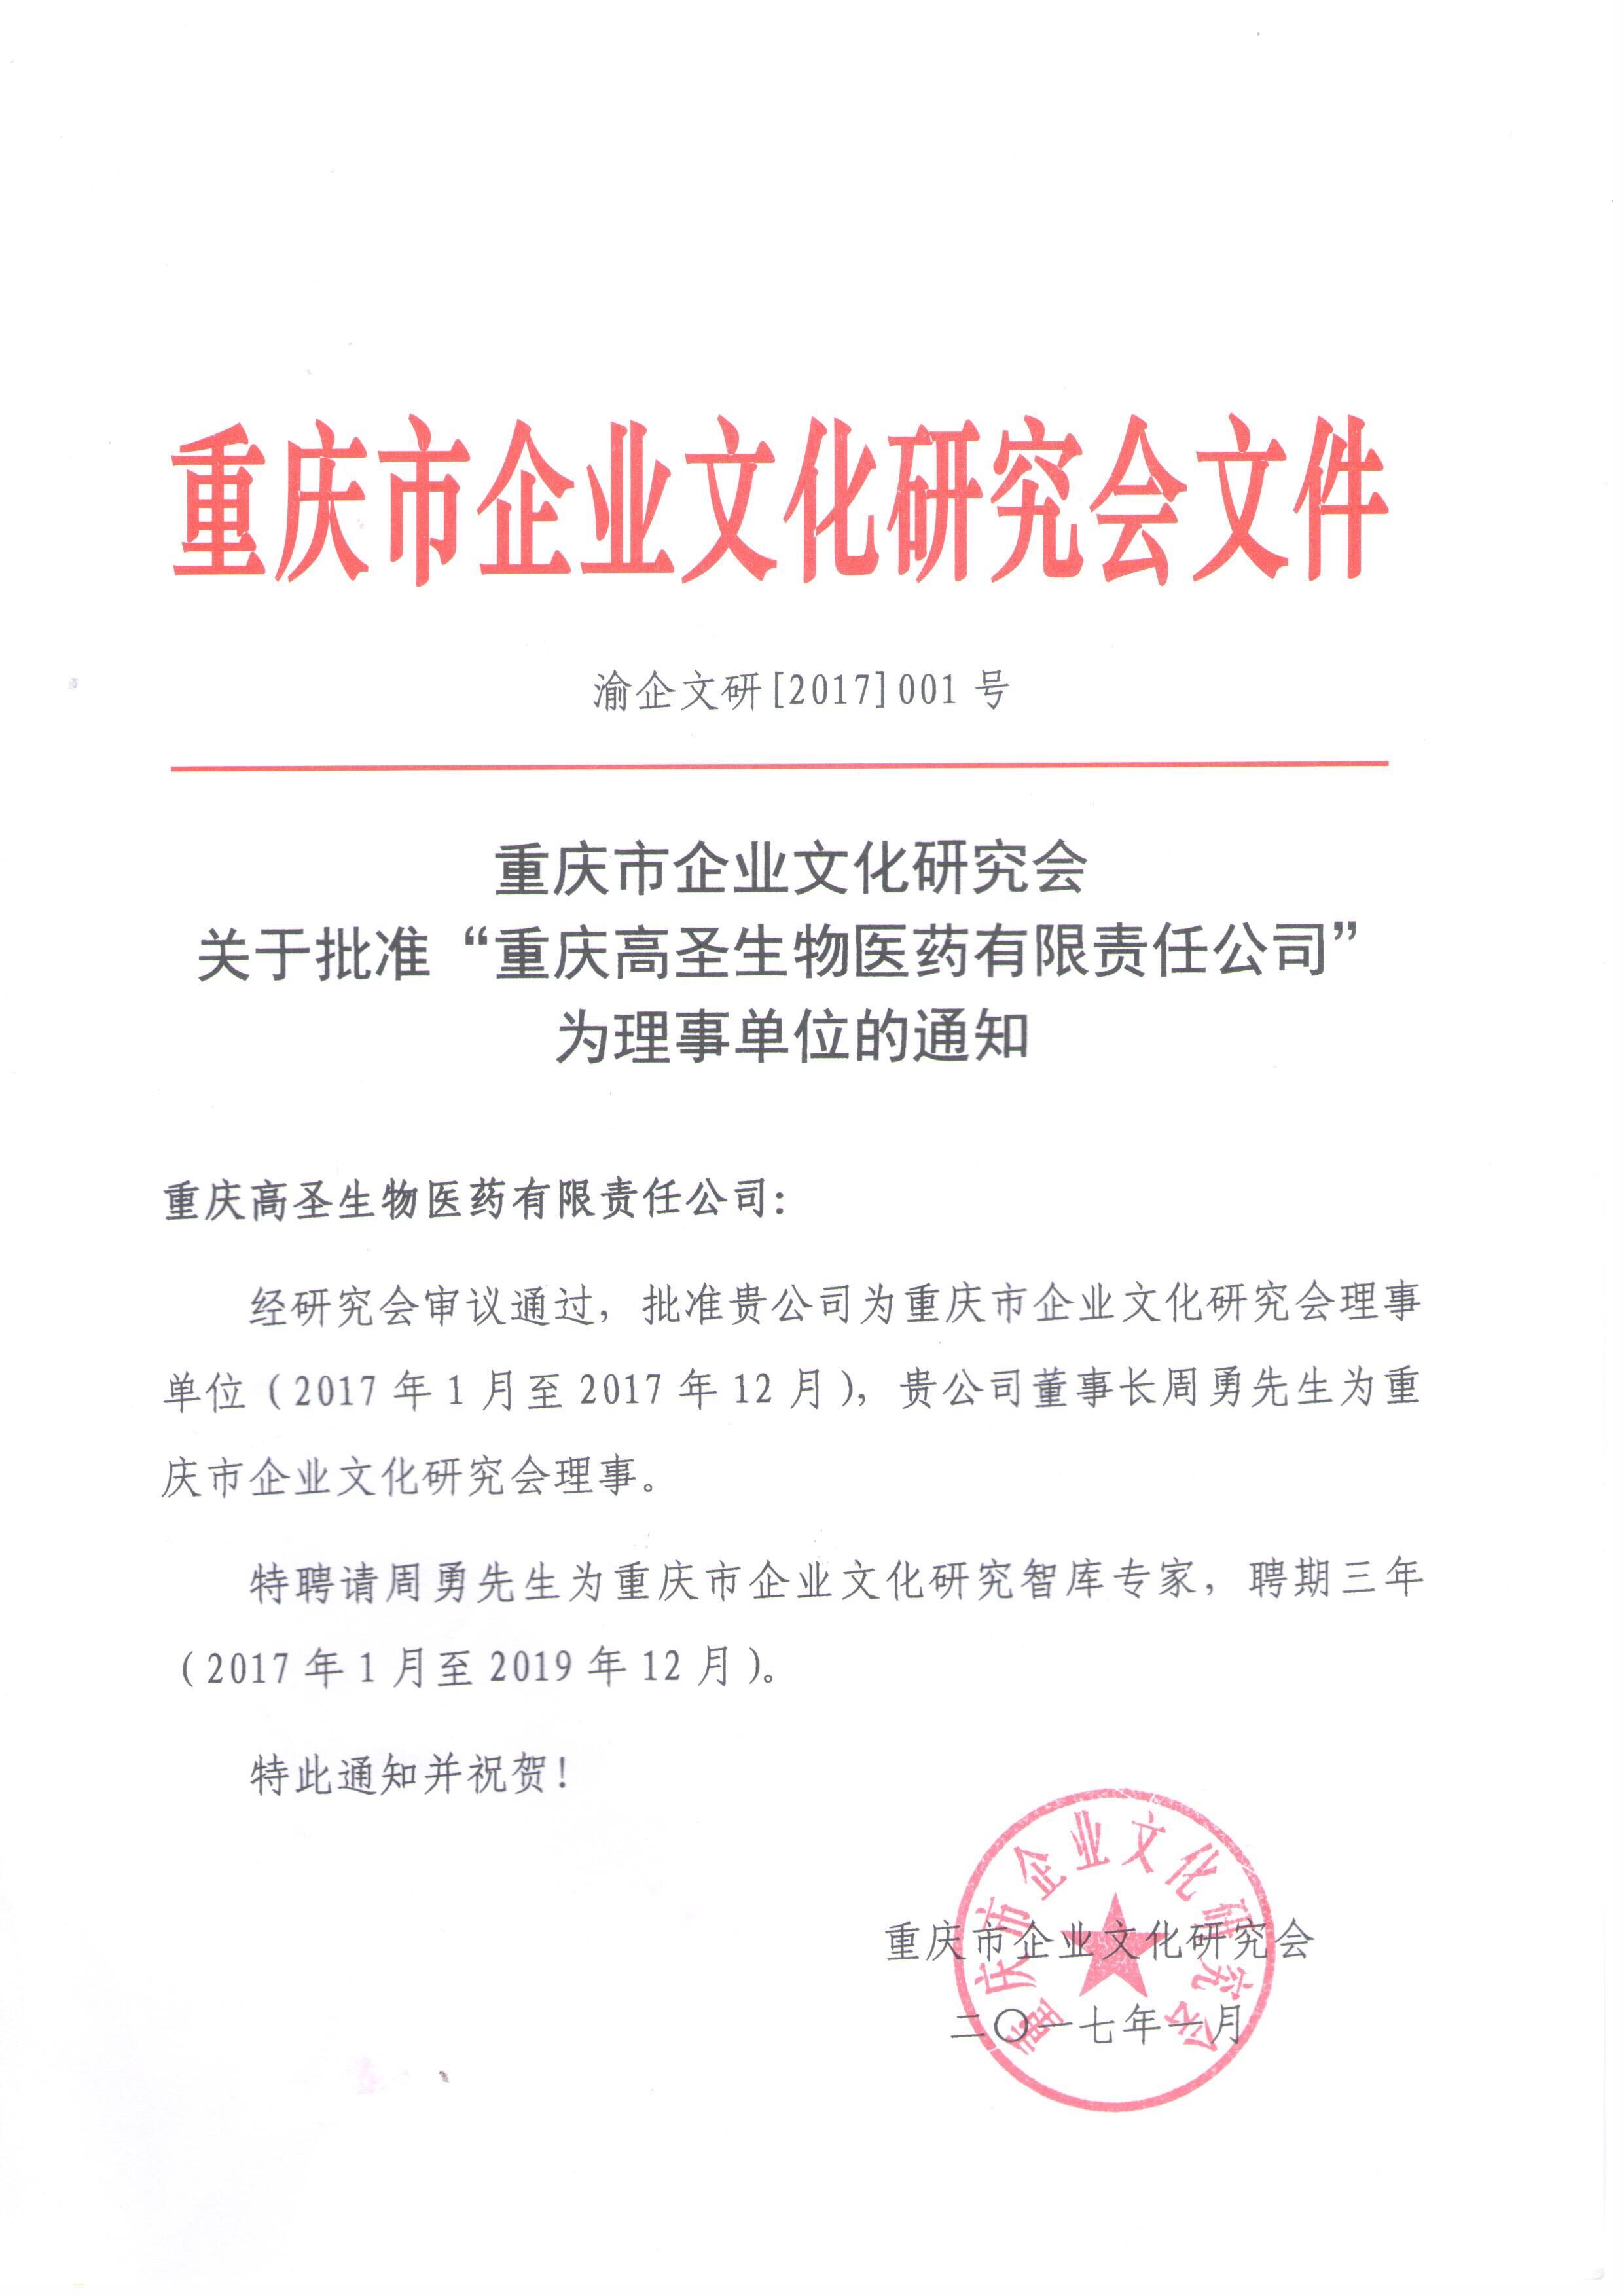 文化兴企，文化强国！ ——热烈祝贺高圣医药成为重庆市企业文化研究会理事单位